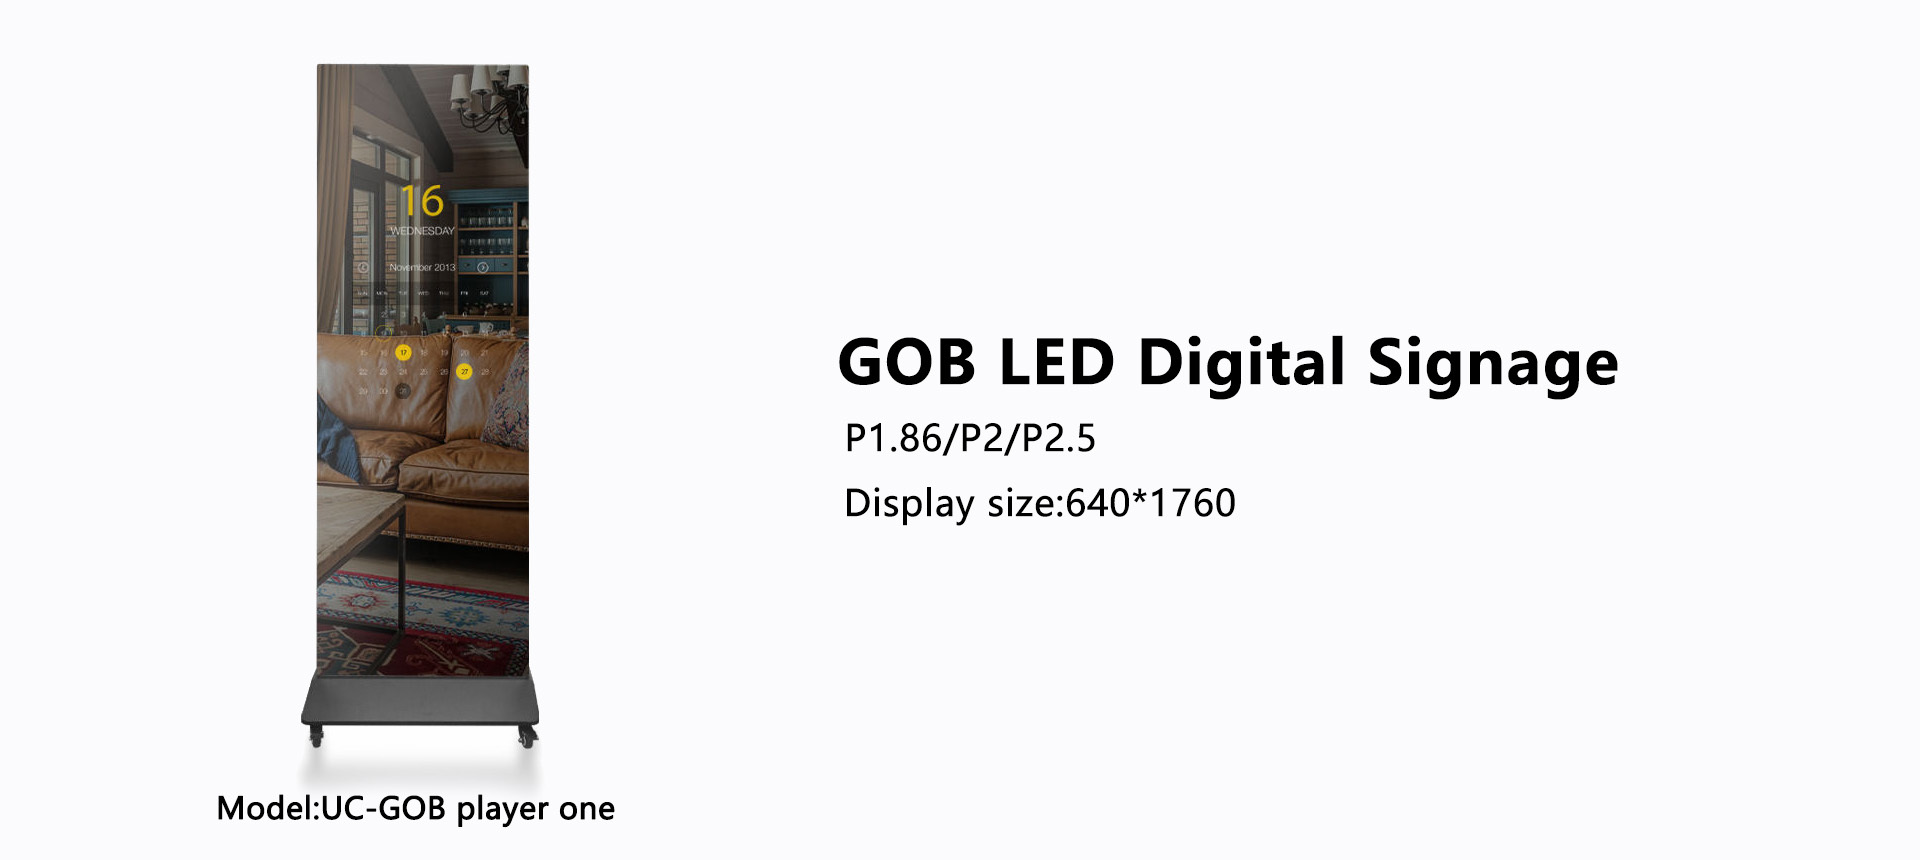 GOB LED Digital Signage